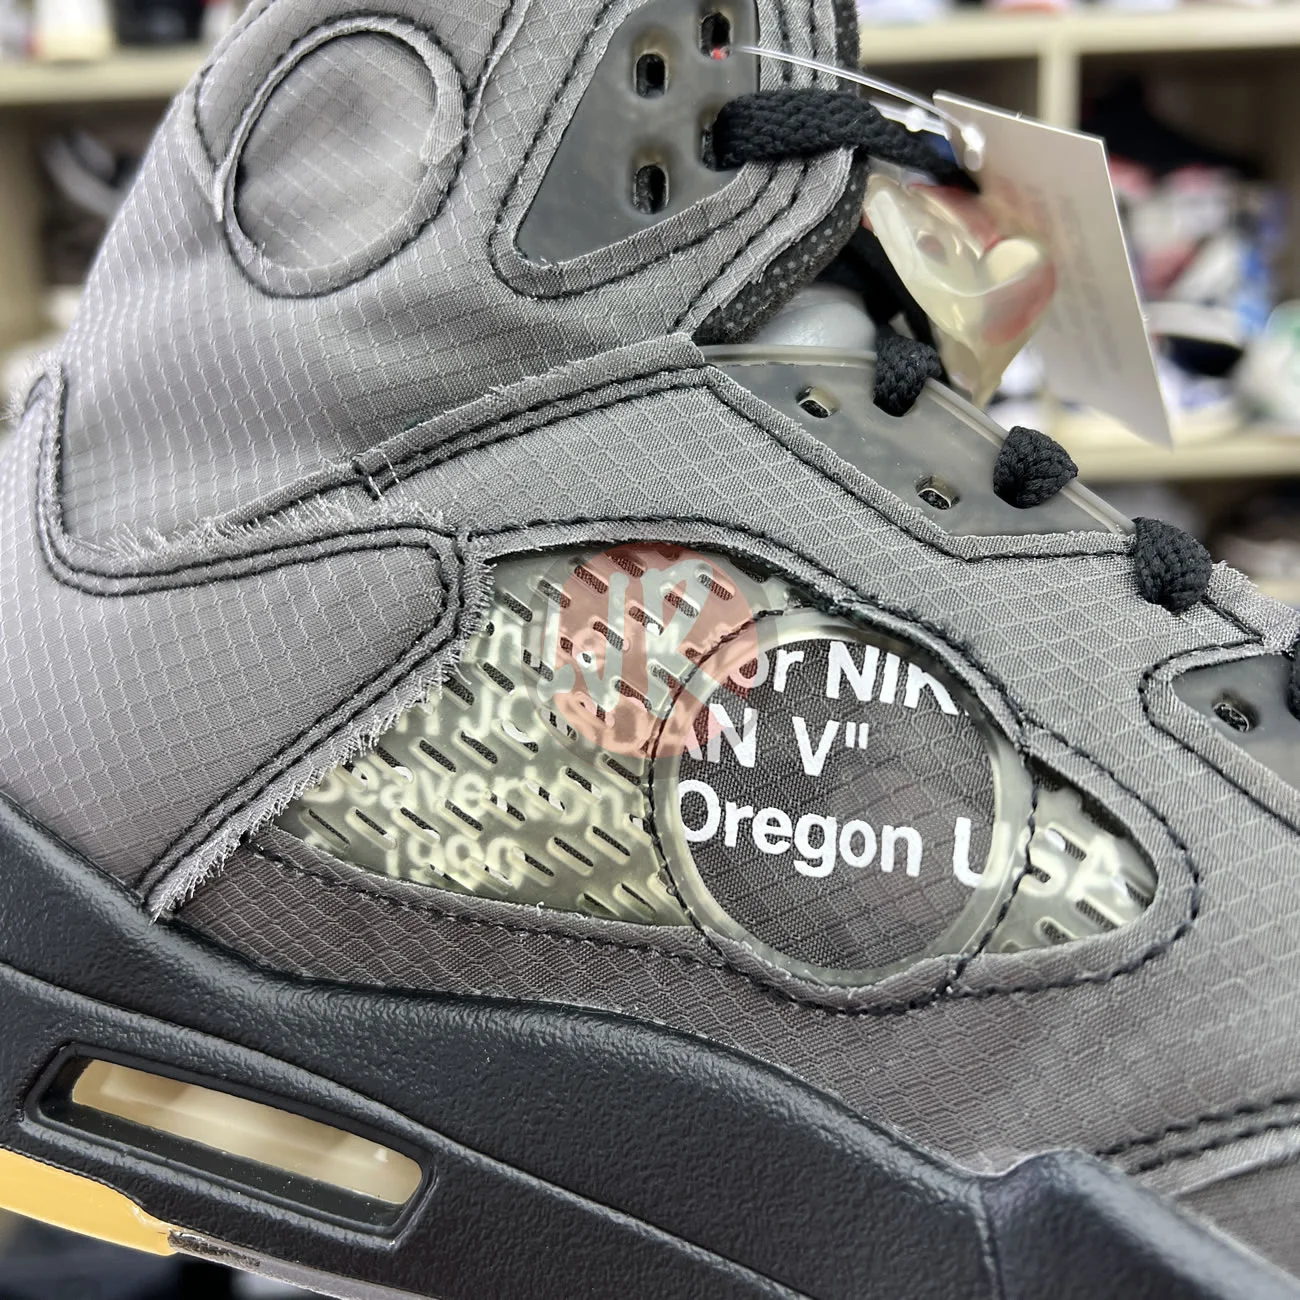 Air Jordan 5 Retro Off White Muslin Ct8480 001 Ljr Sneakers (10) - bc-ljr.com